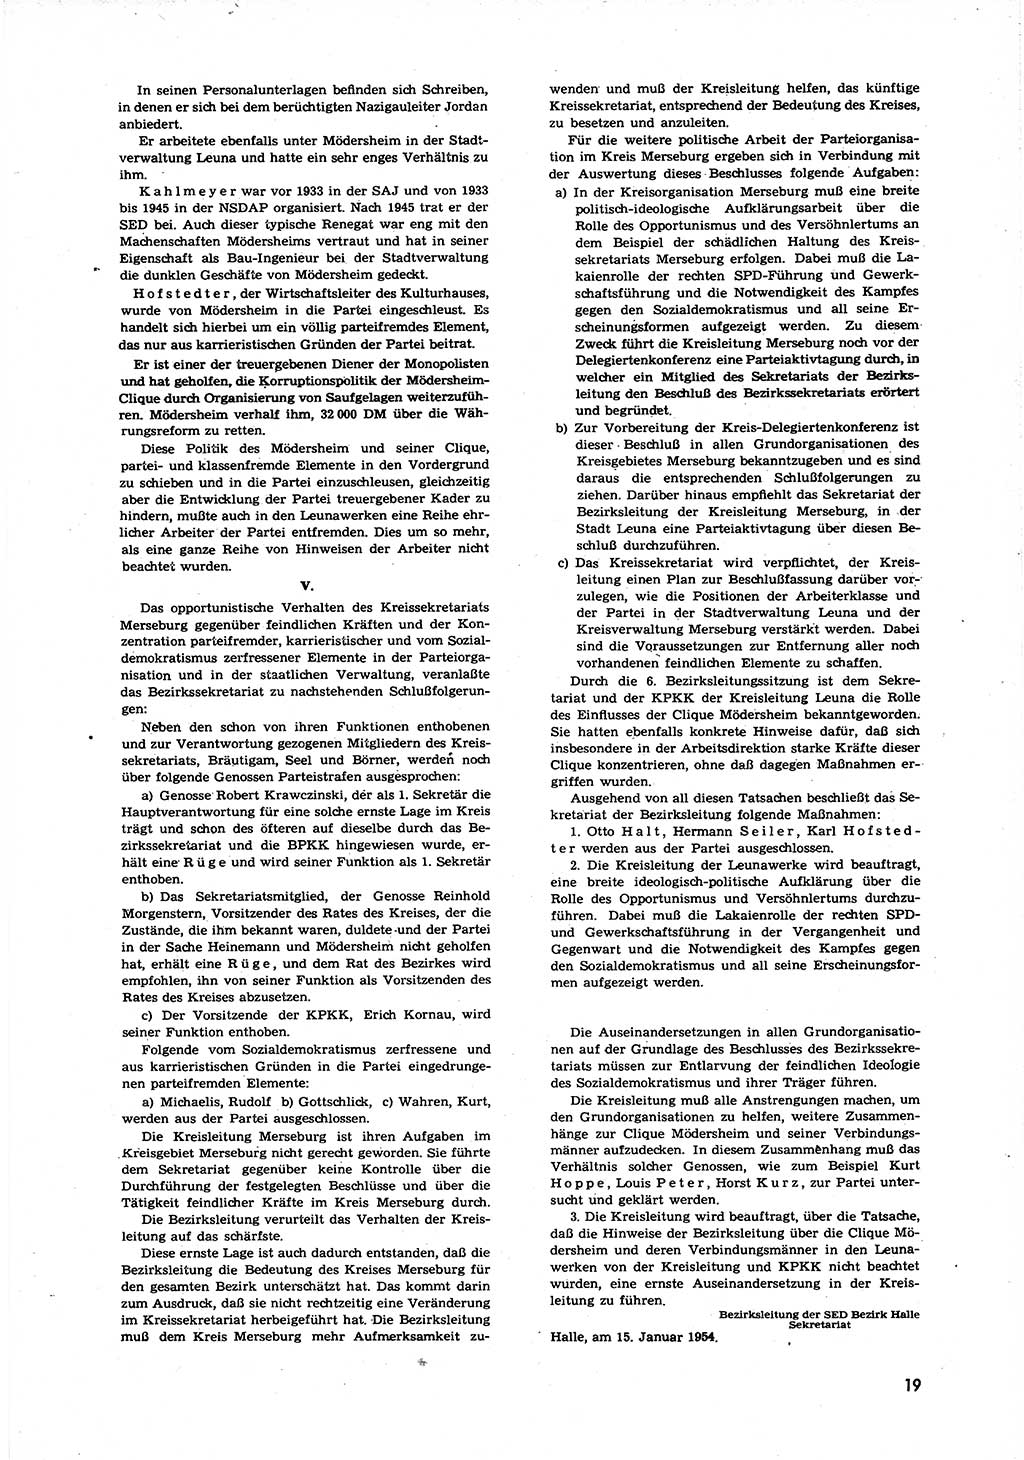 Neuer Weg (NW), Organ des Zentralkomitees (ZK) der SED (Sozialistische Einheitspartei Deutschlands) für alle Parteiarbeiter, 9. Jahrgang [Deutsche Demokratische Republik (DDR)] 1954, Heft 4/19 (NW ZK SED DDR 1954, H. 4/19)